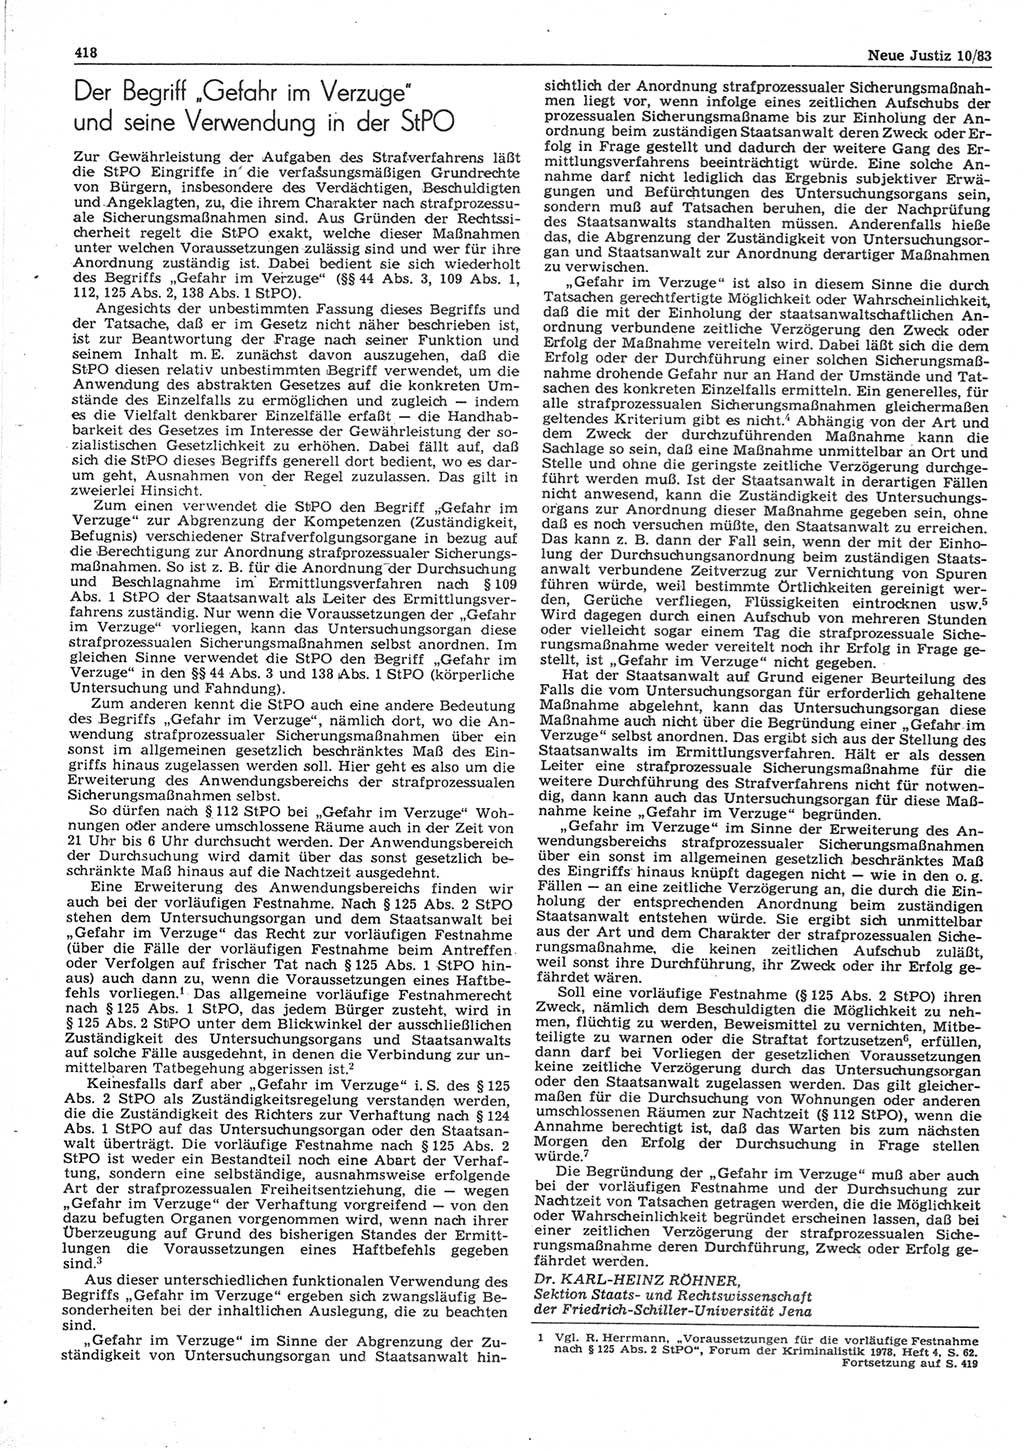 Neue Justiz (NJ), Zeitschrift für sozialistisches Recht und Gesetzlichkeit [Deutsche Demokratische Republik (DDR)], 37. Jahrgang 1983, Seite 418 (NJ DDR 1983, S. 418)